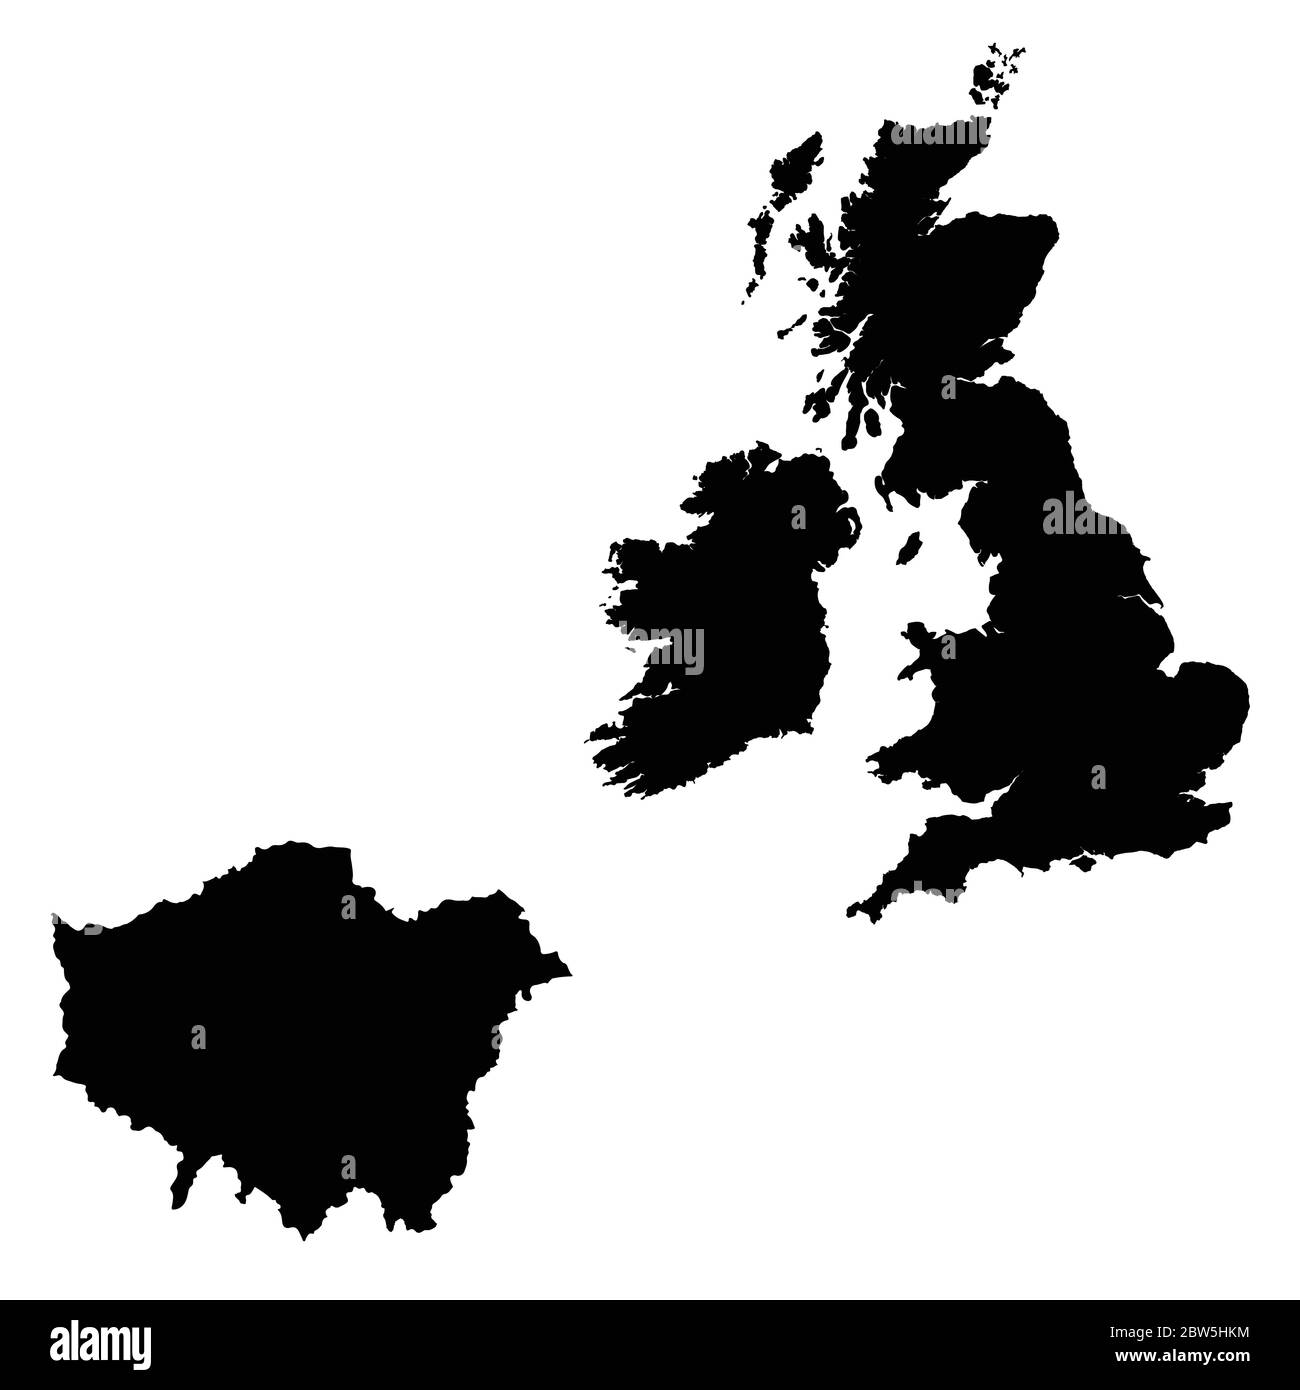 Vektorkarte Großbritannien und London. Land und Hauptstadt. Isolierte Vektorgrafik. Schwarz auf weißem Hintergrund. EPS 10-Abbildung. Stock Vektor